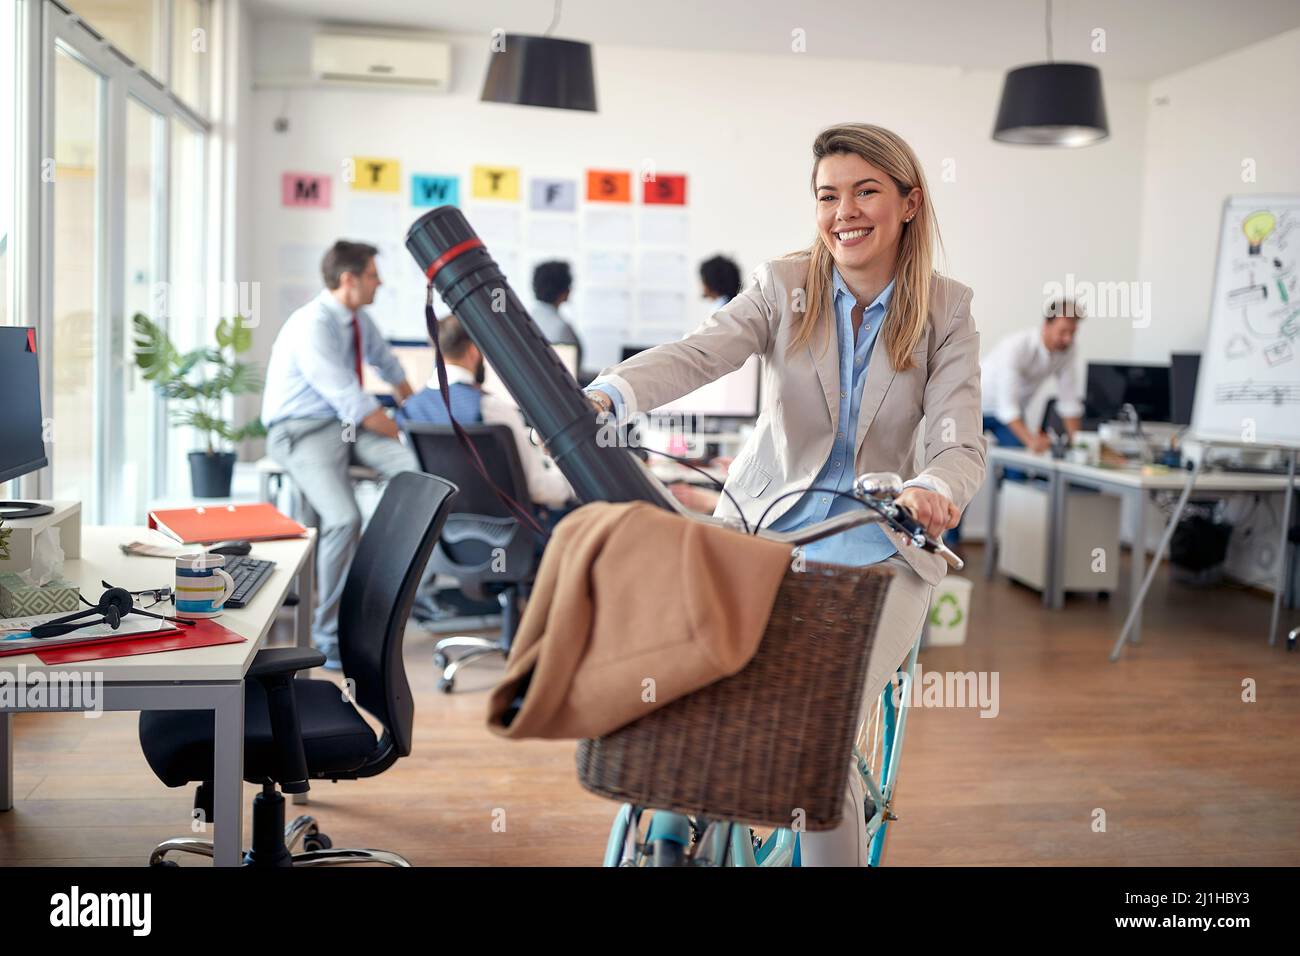 Une jeune employée gaie aime poser pour une photo tout en faisant du vélo dans une atmosphère détendue pendant une pause au bureau. Employés, poste, o Banque D'Images